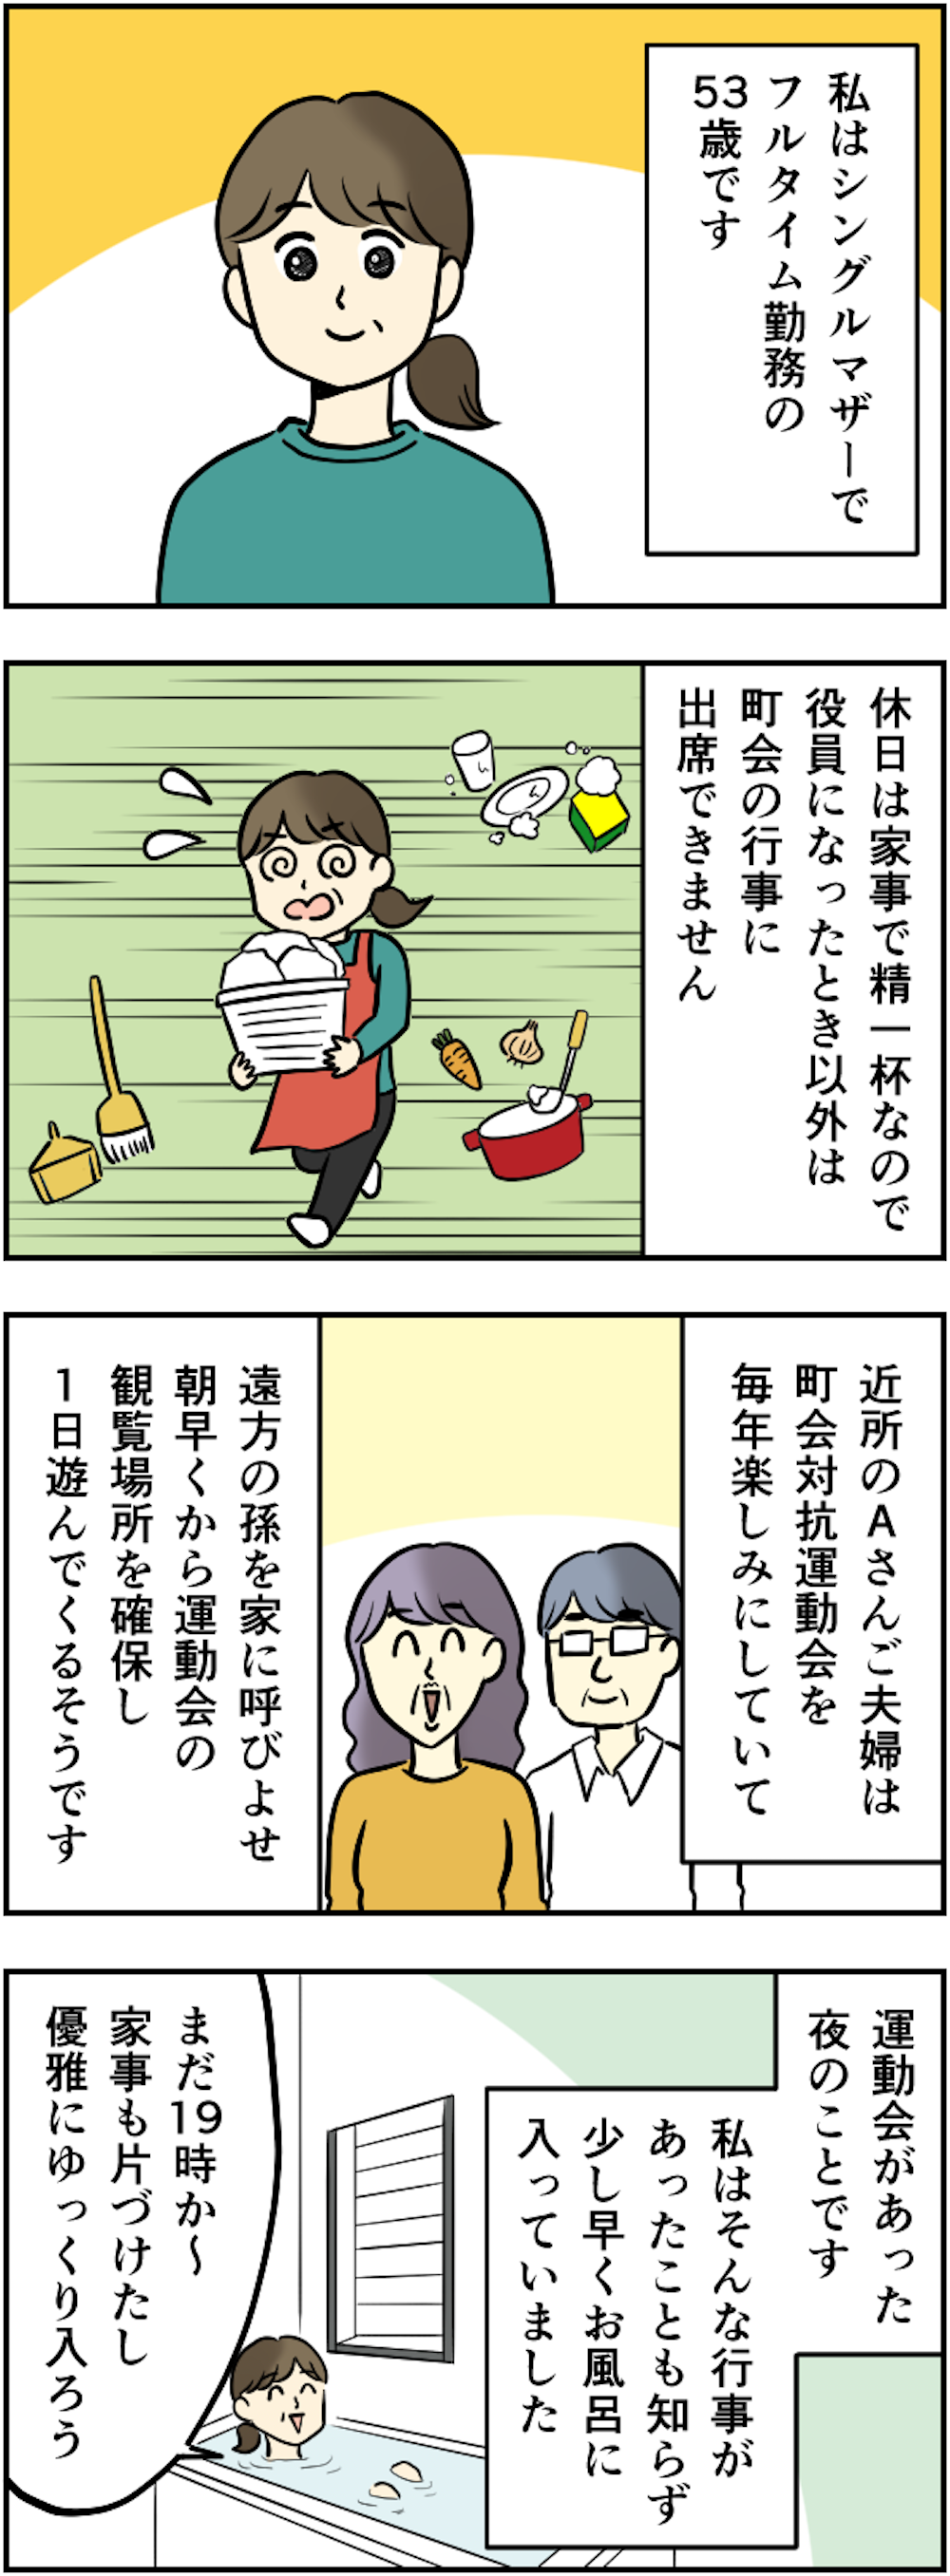 【漫画】「窓を開けろ！」って...私、入浴中ですが!?　ご近所さん、風呂の窓の外で大声出さないで 115kansei_011.png